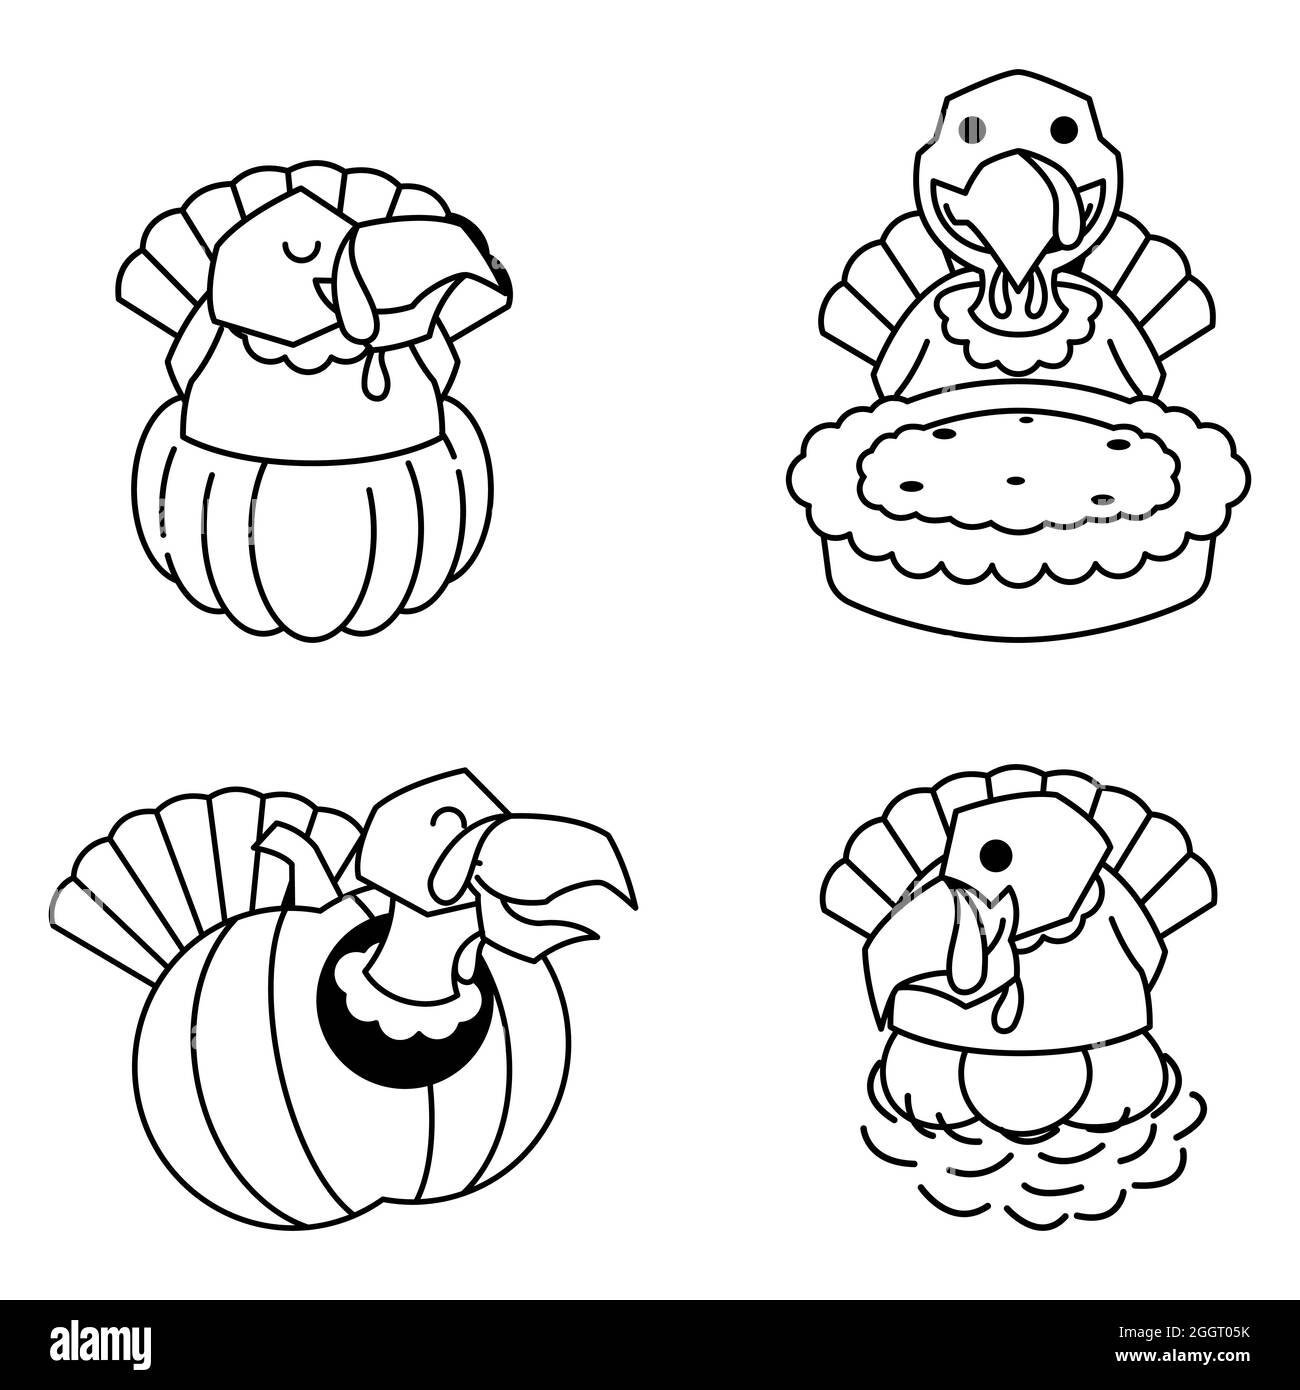 Turkey Autumn Fall Pumpkin Pie Egg Thanksgiving Cartoon Line Art Stock Vector